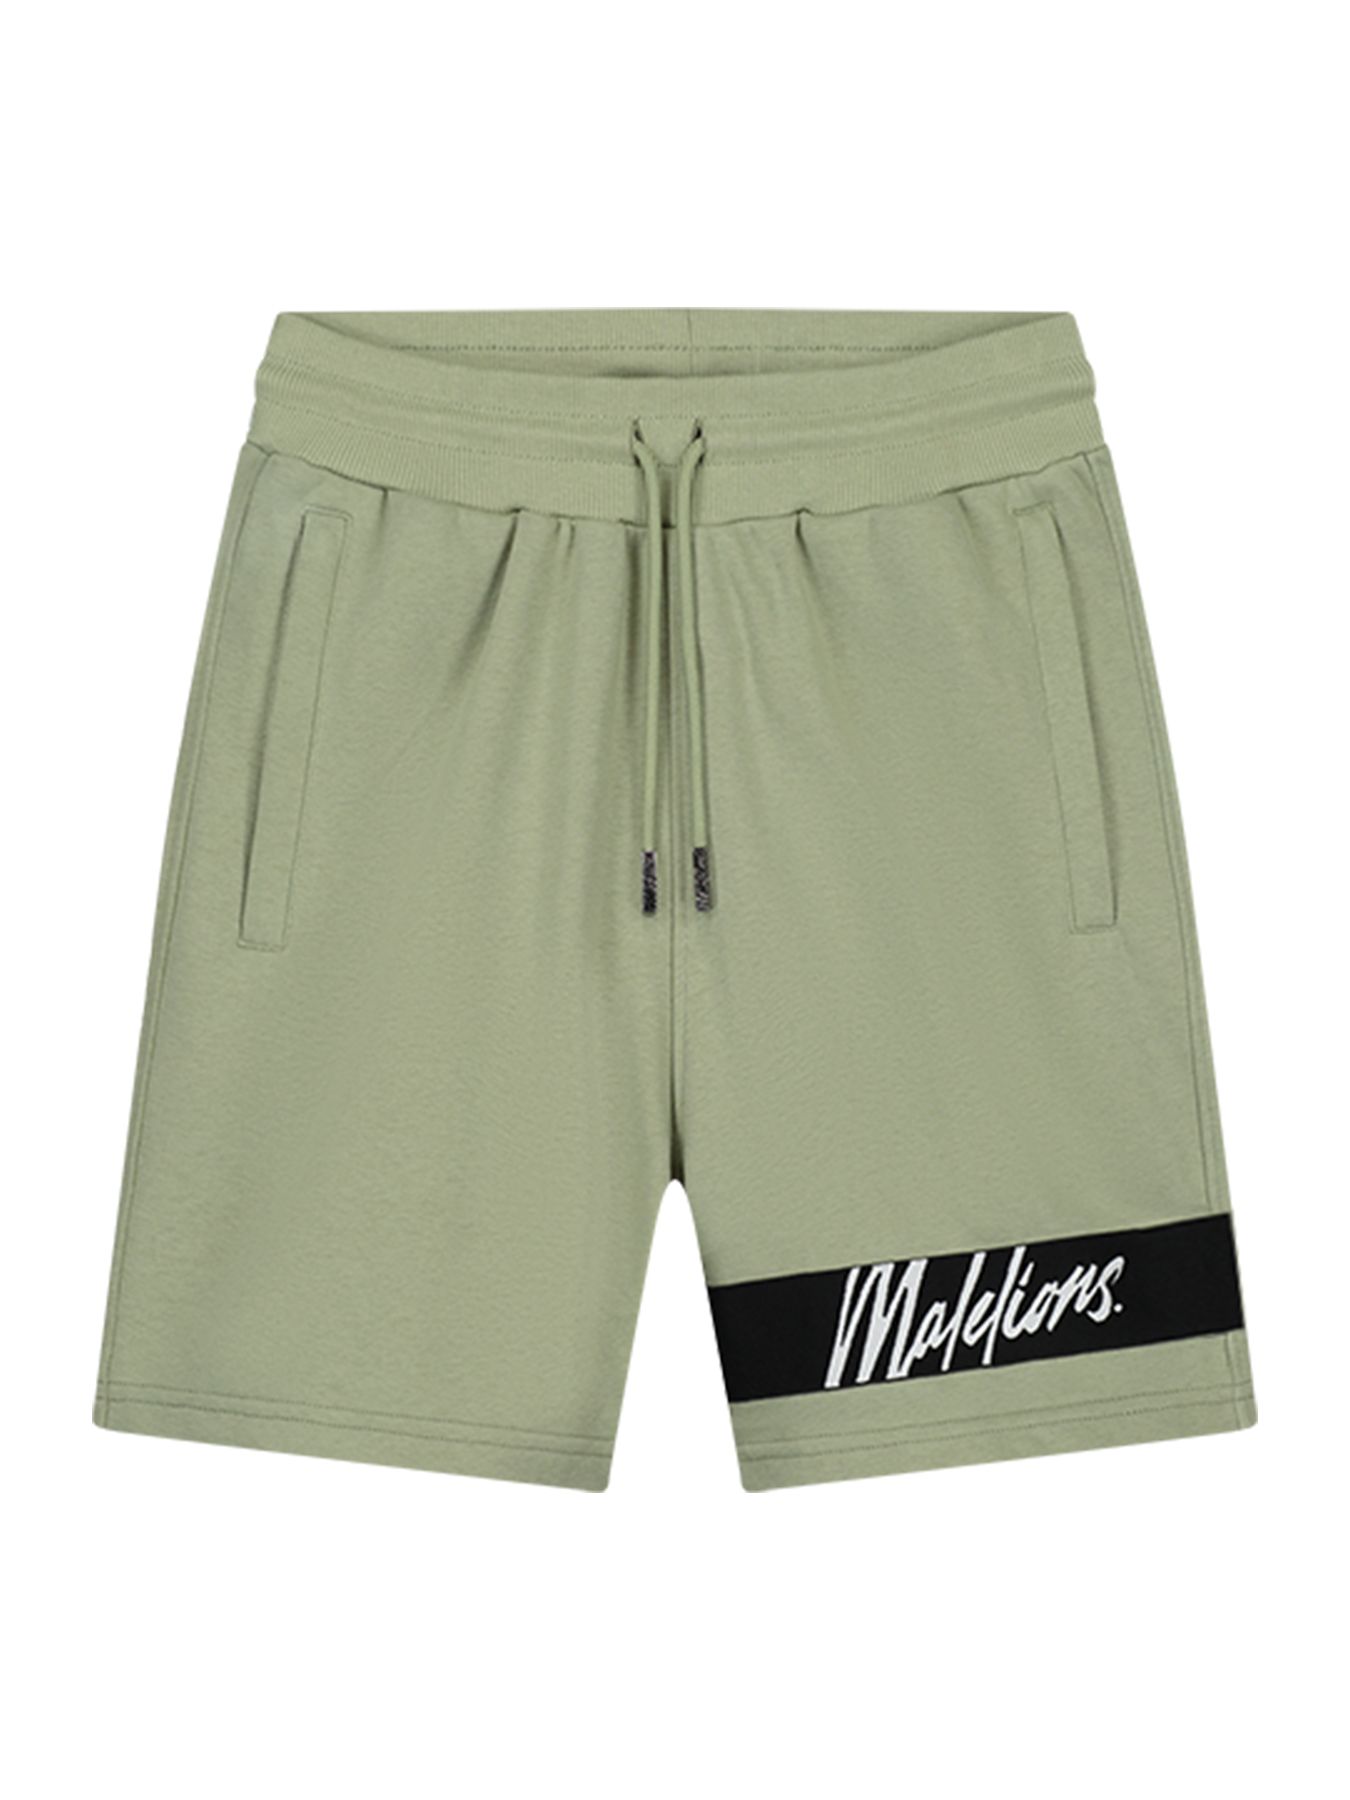 Malelions Men Captain shorts Sage 2900147821064